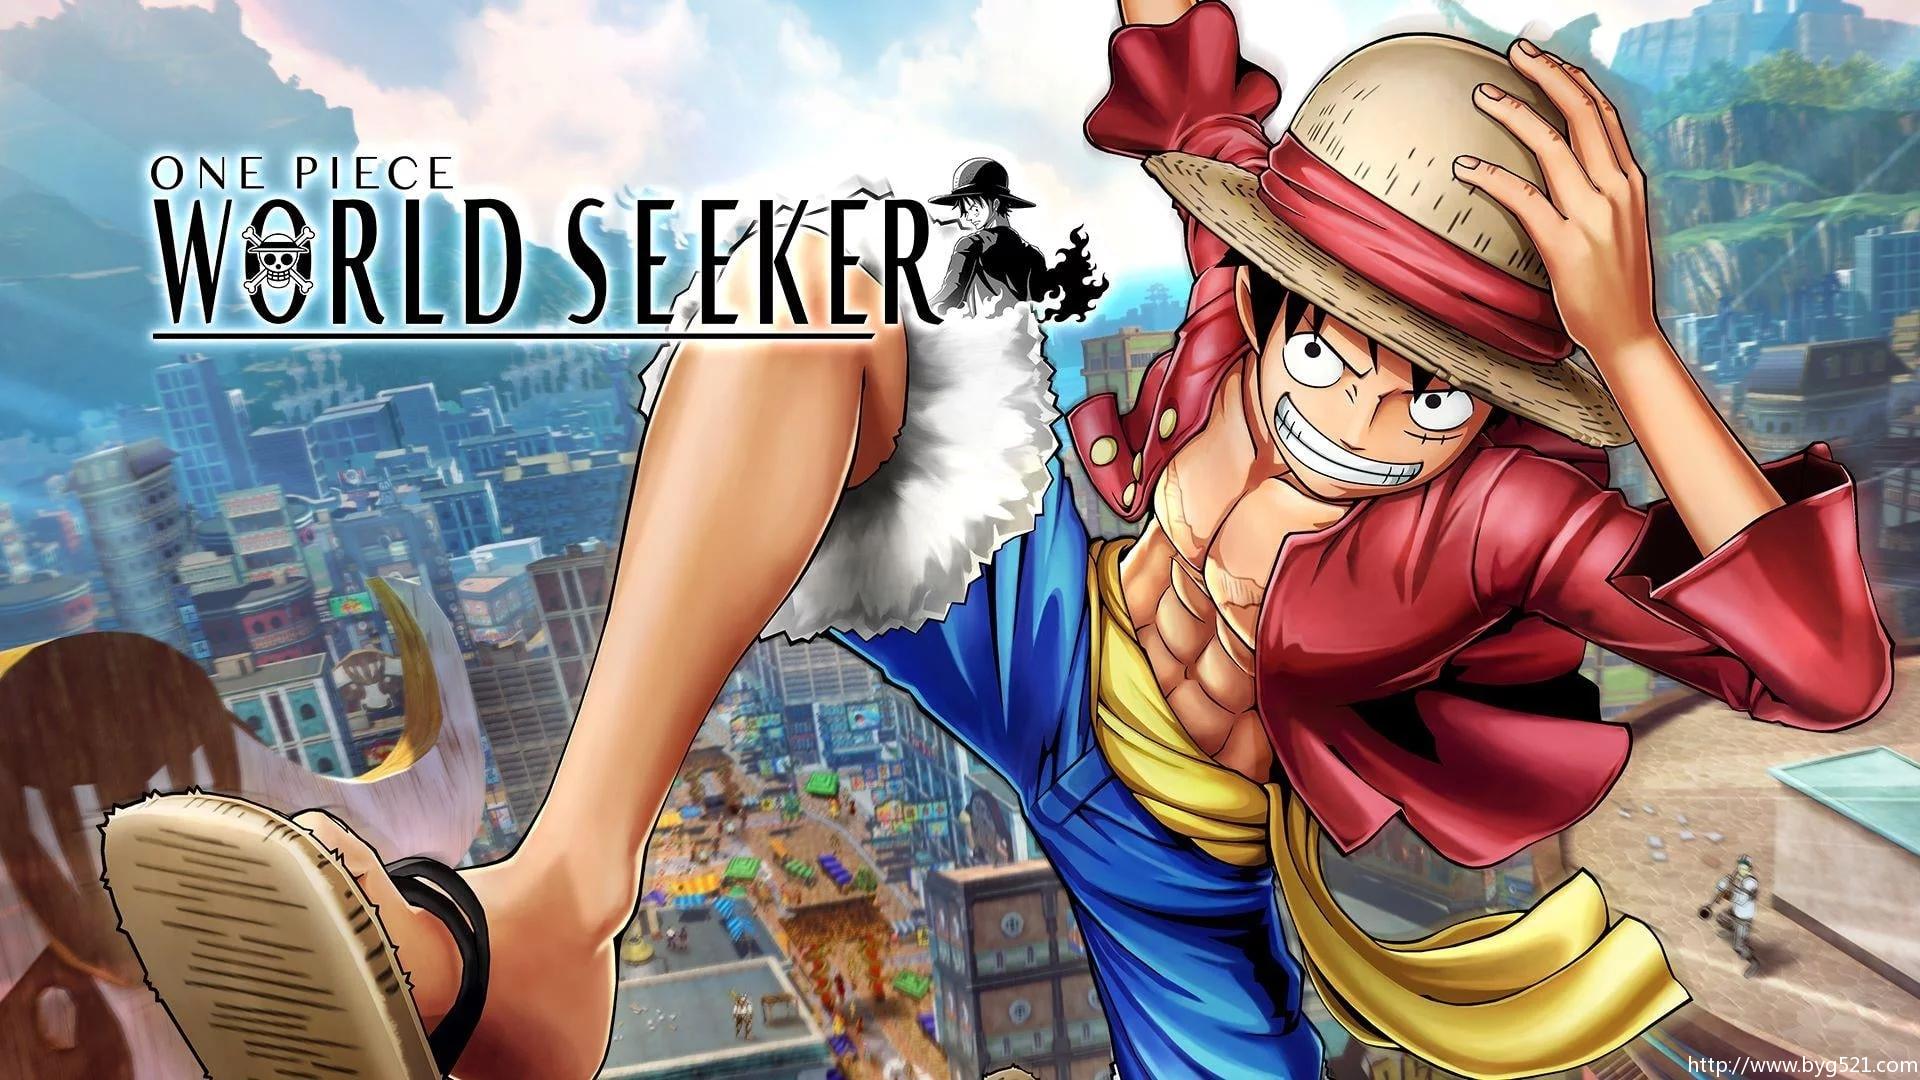 Únete a la aventura en One Piece World Seeker ahora en Xbox One, PS4 y PC